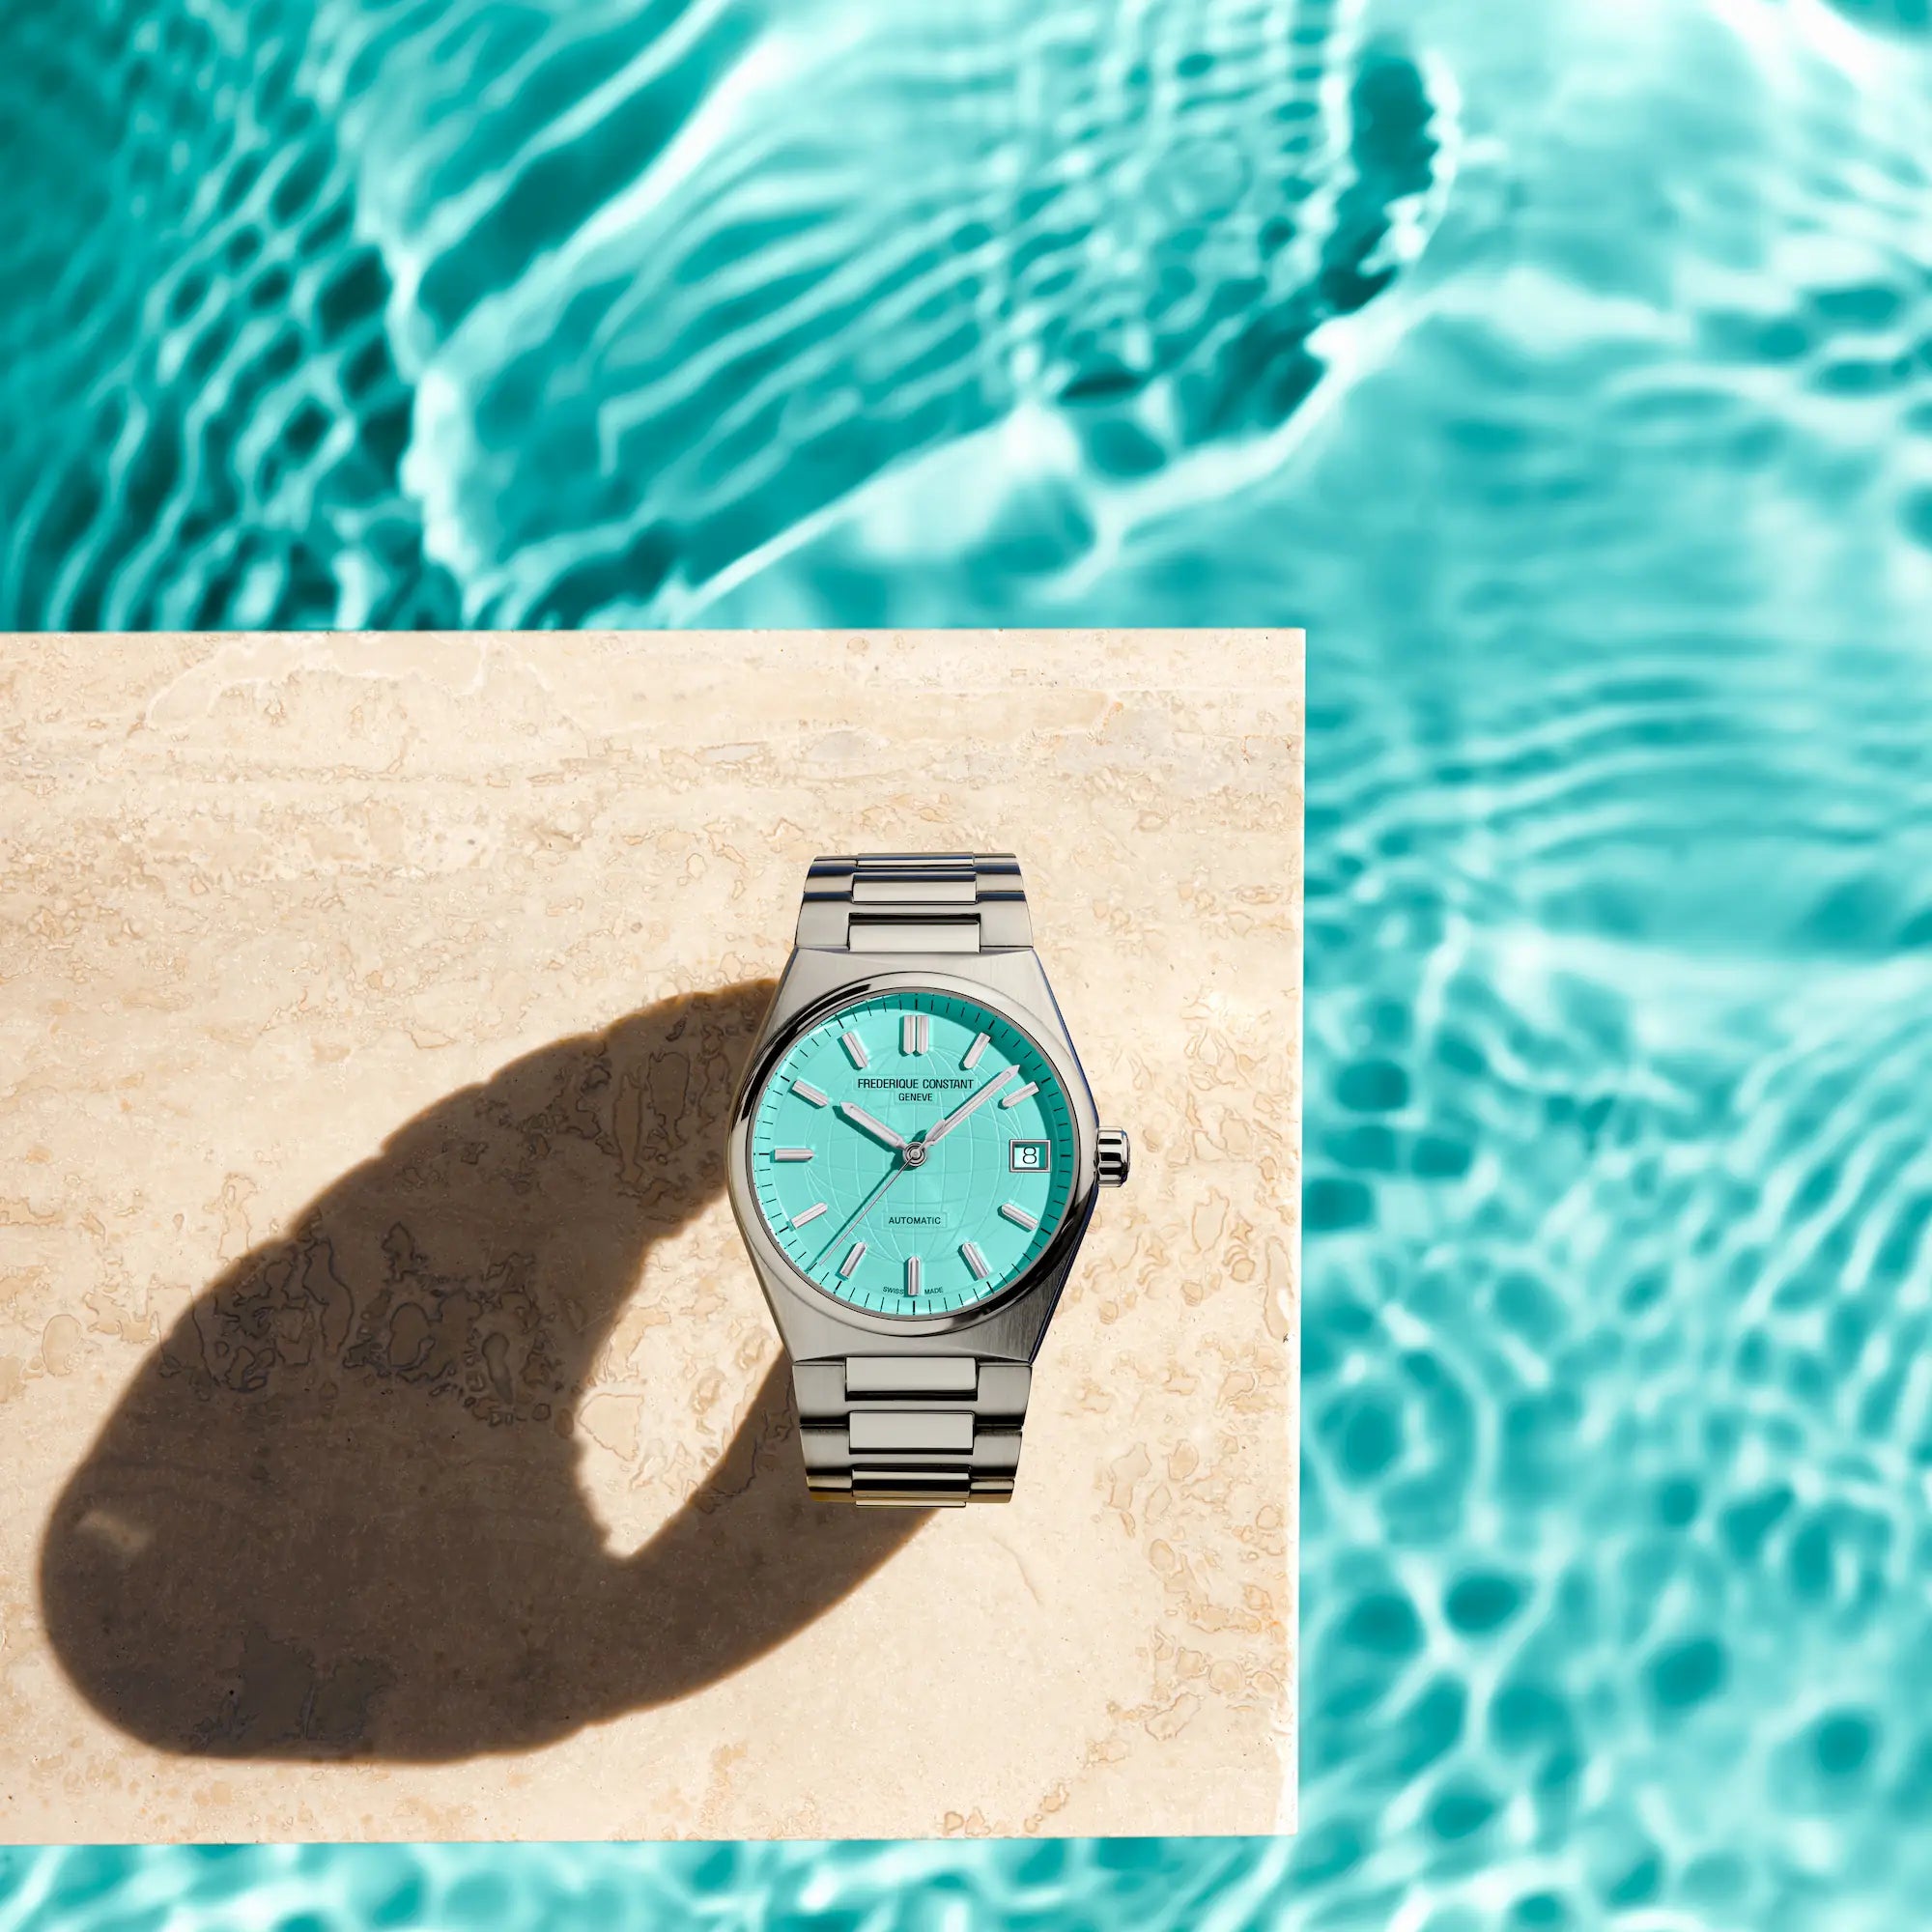 Produktfotografie der Frederique Constant Uhr "Highlife Ladies Automatic" mit dem tiffany-blauen Zifferblatt